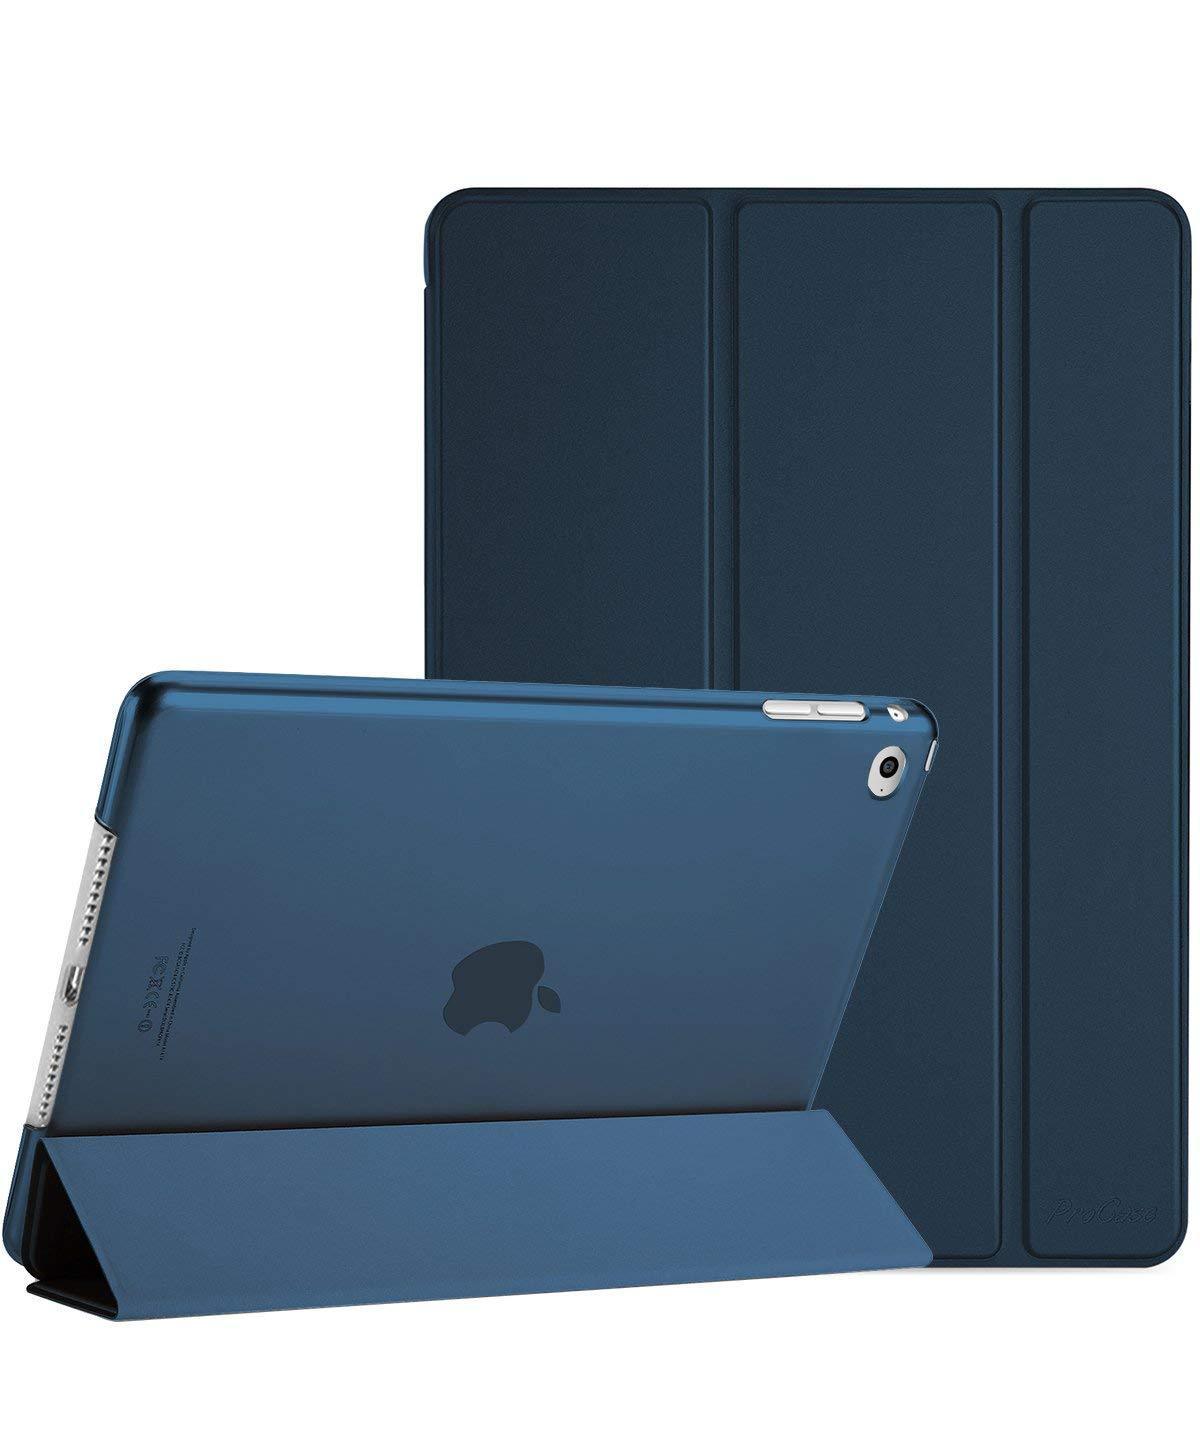 iPad Mini 4 Generation 2015 Slim Case